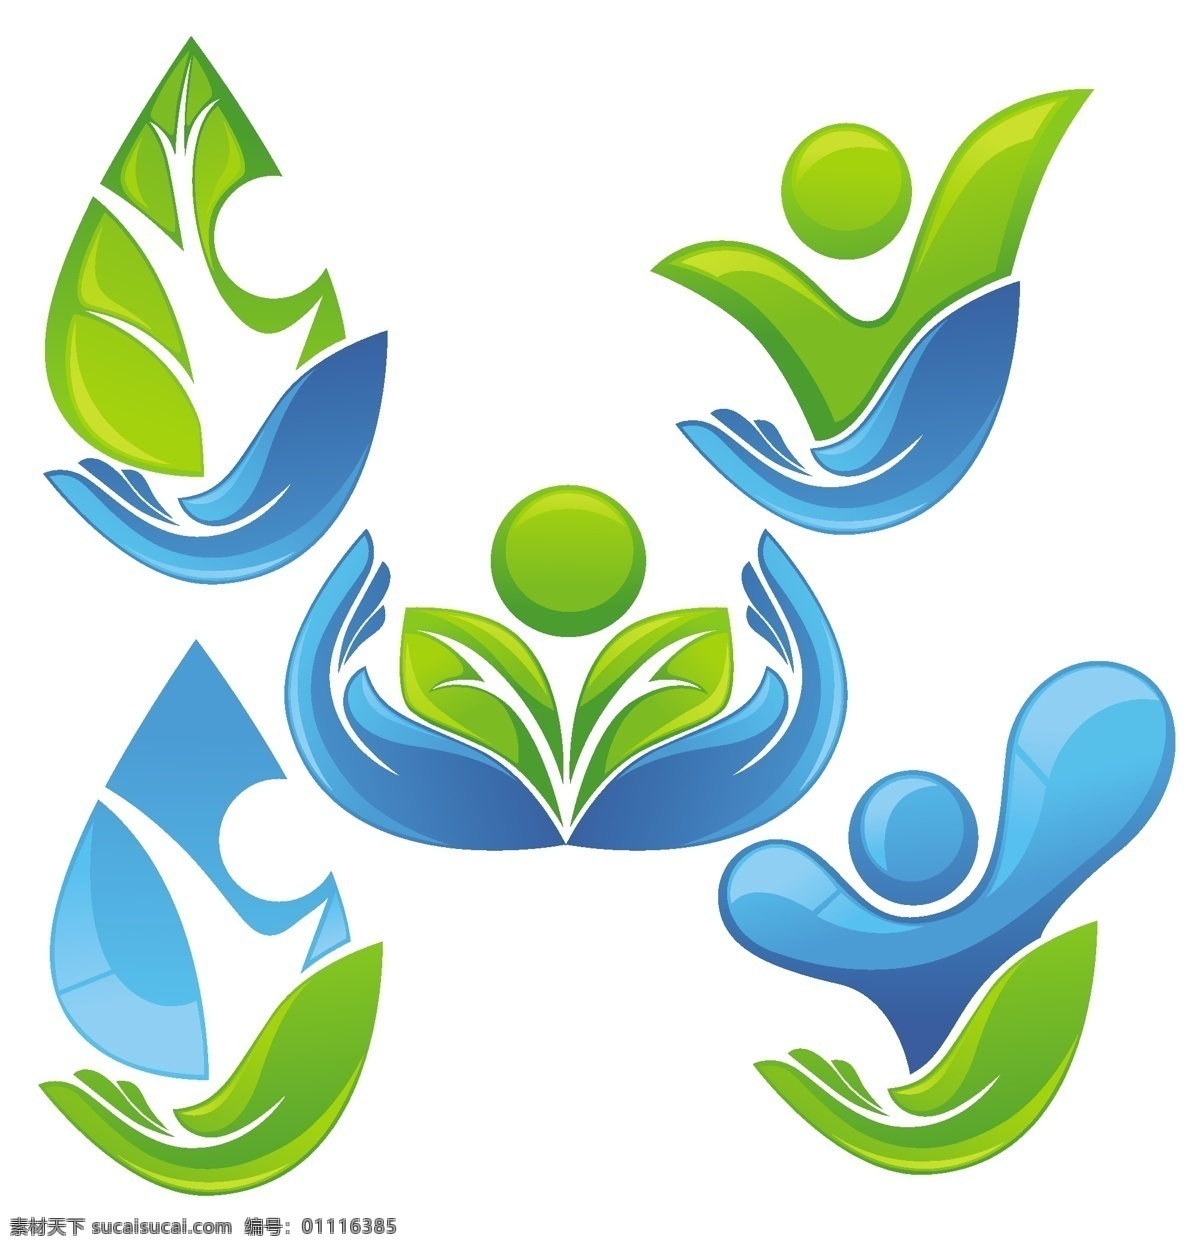 绿色环保 手心 logo 手 手掌 线条 环保 人 小人 绿叶 树苗 树叶 标志 小图标 标识标志图标 矢量 色 生态 自然 图标 标志标识